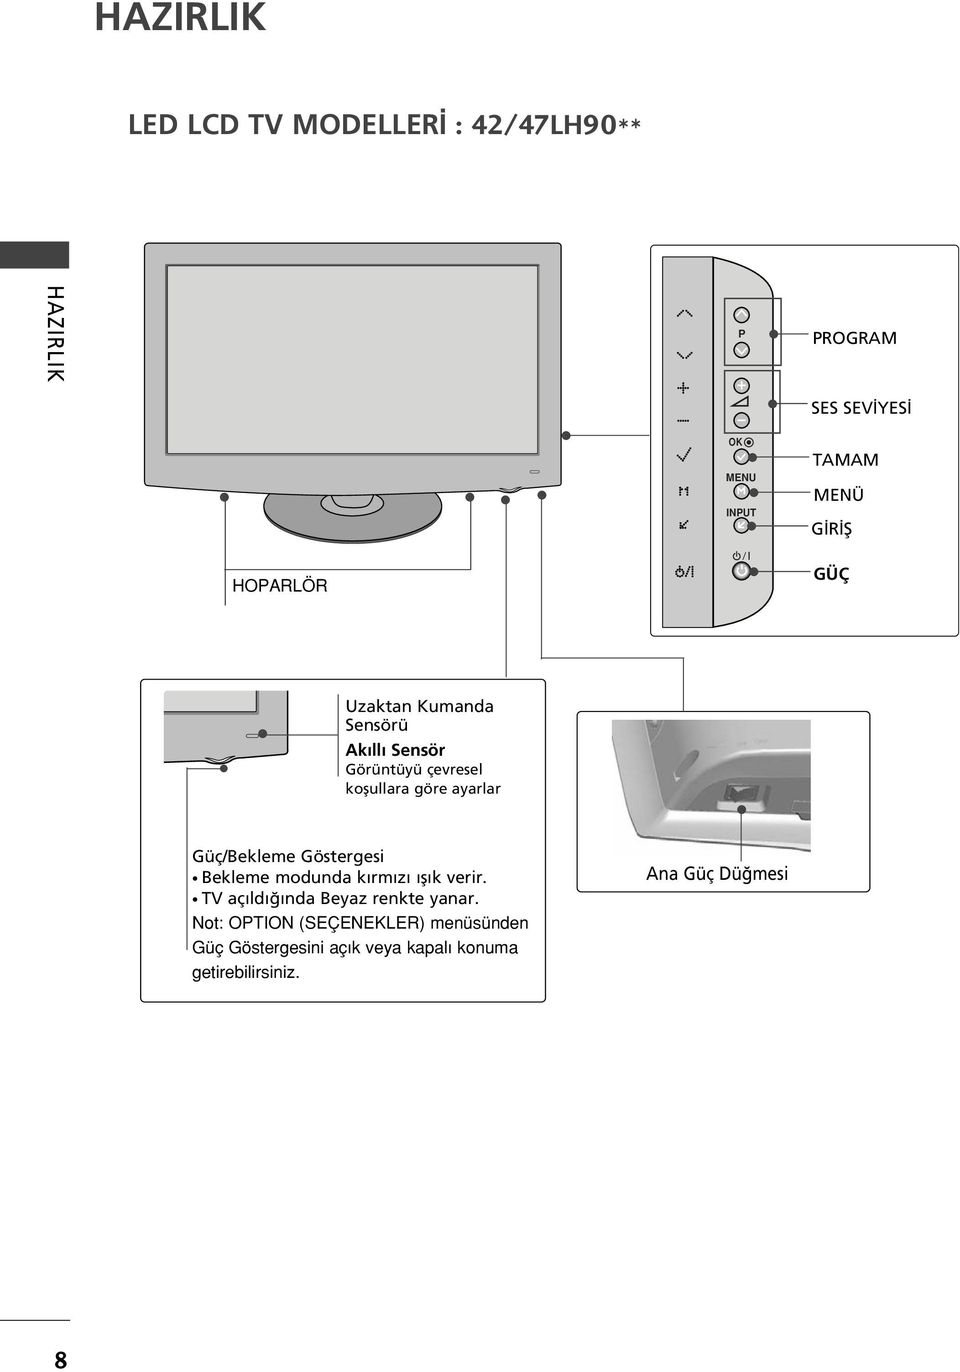 Güç/Bekleme Göstergesi Bekleme modunda k rm z fl k verir. TV aç ld nda Beyaz renkte yanar.